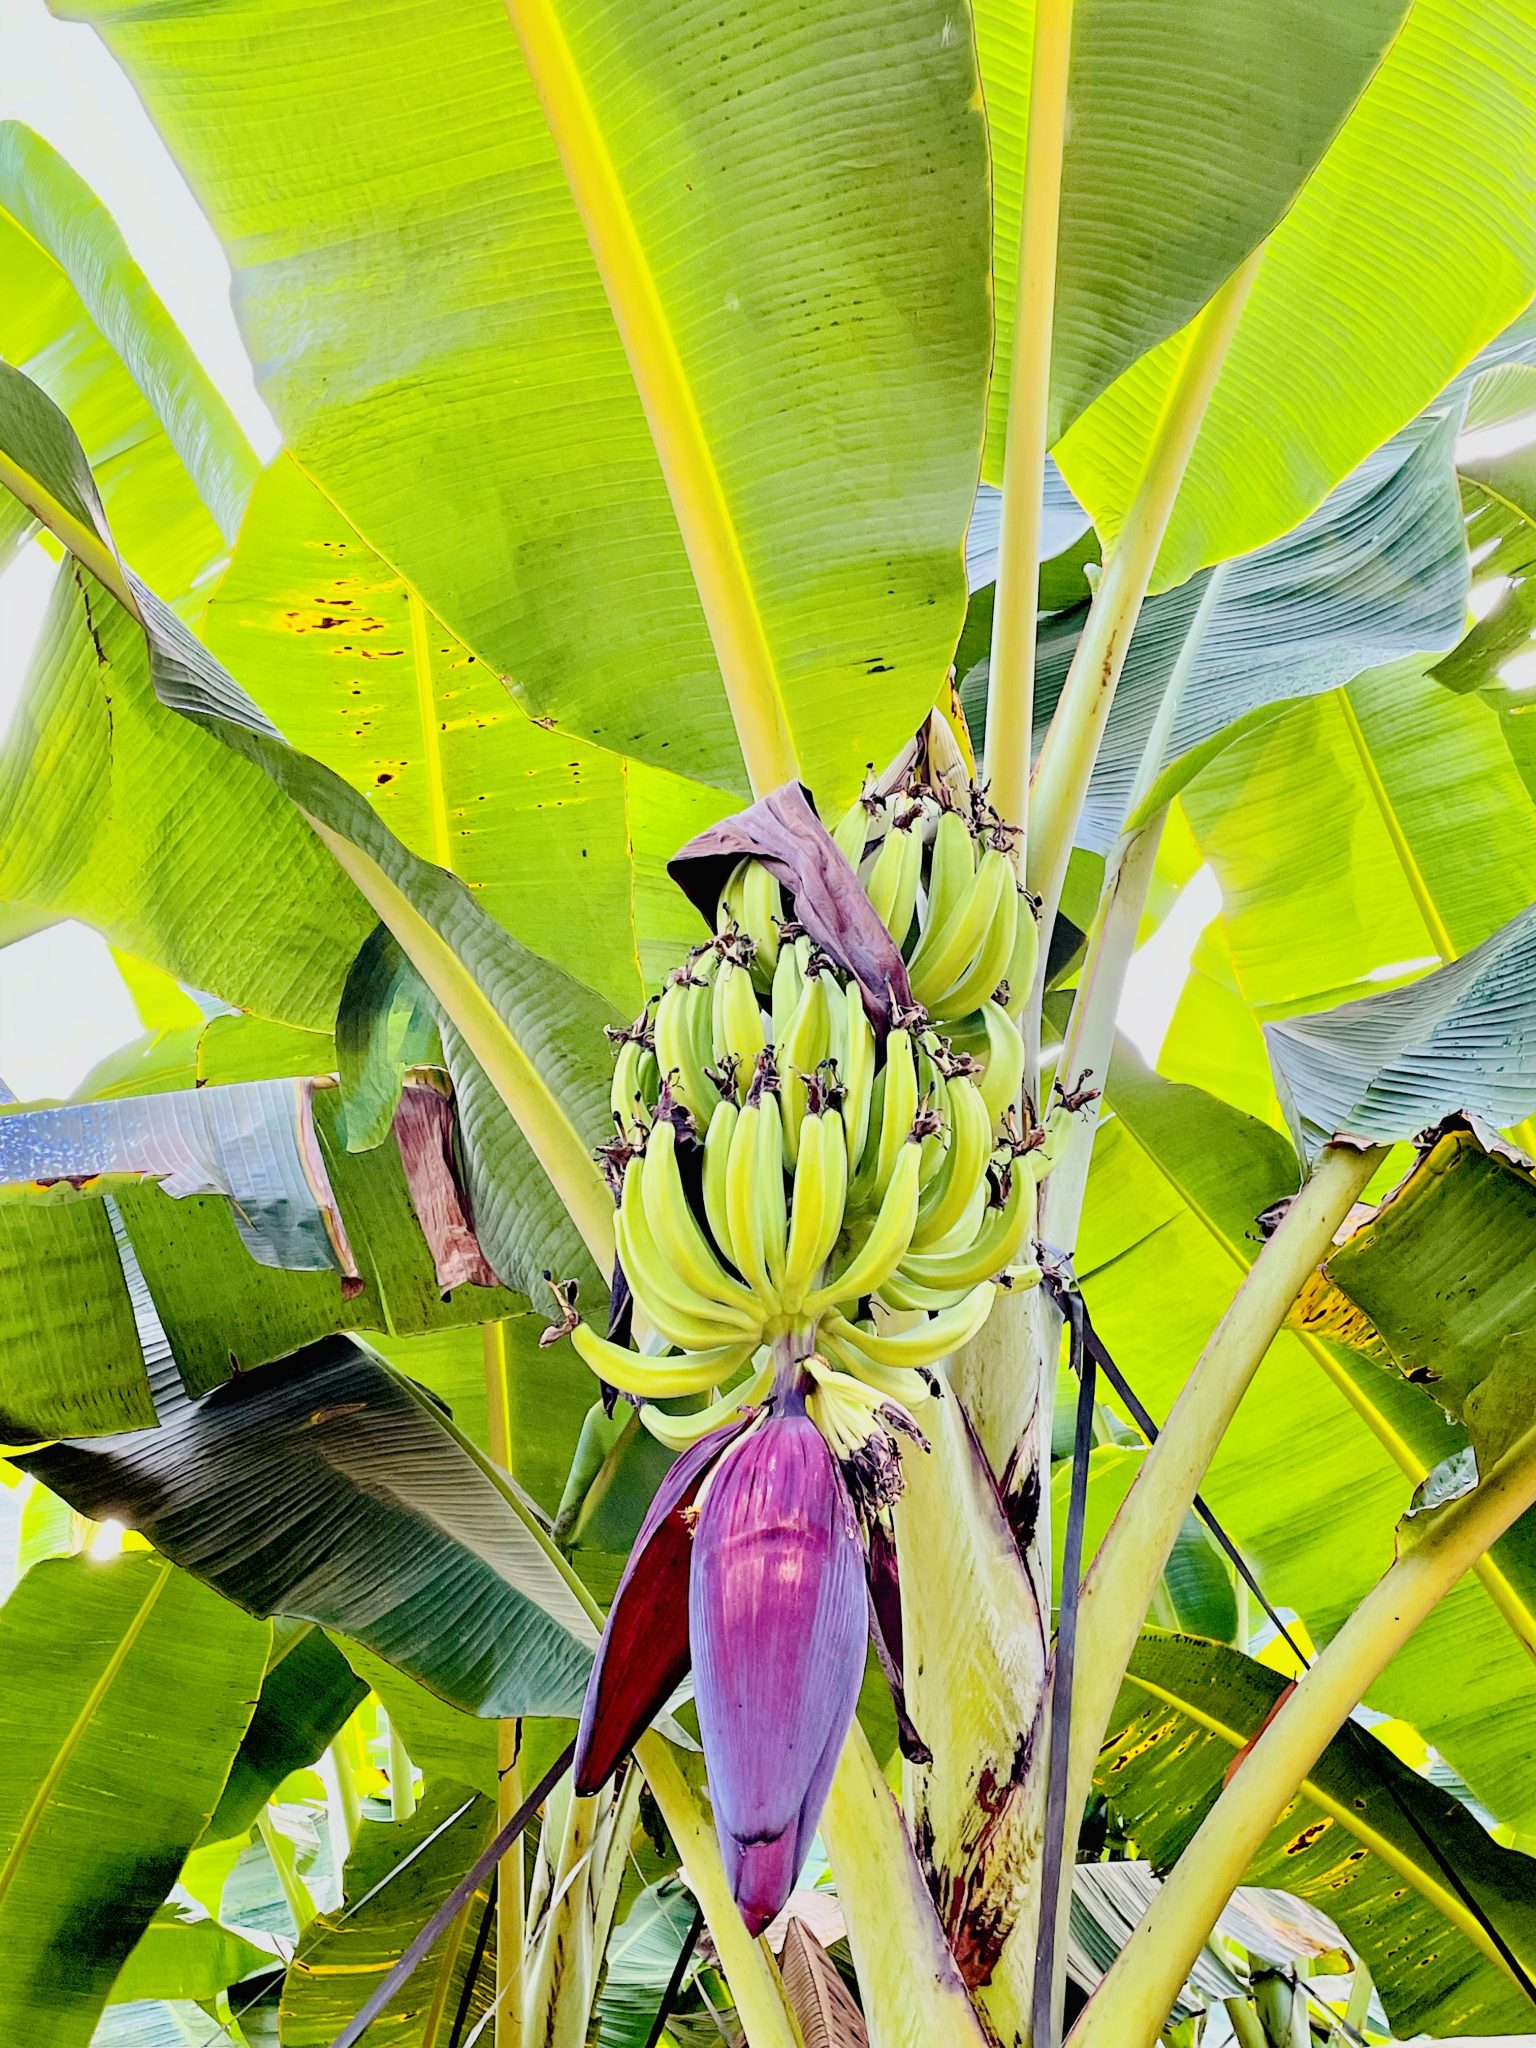 Tender Nendran Banana. From Kozhikode, Kerala.Bananas hanging from a tree.